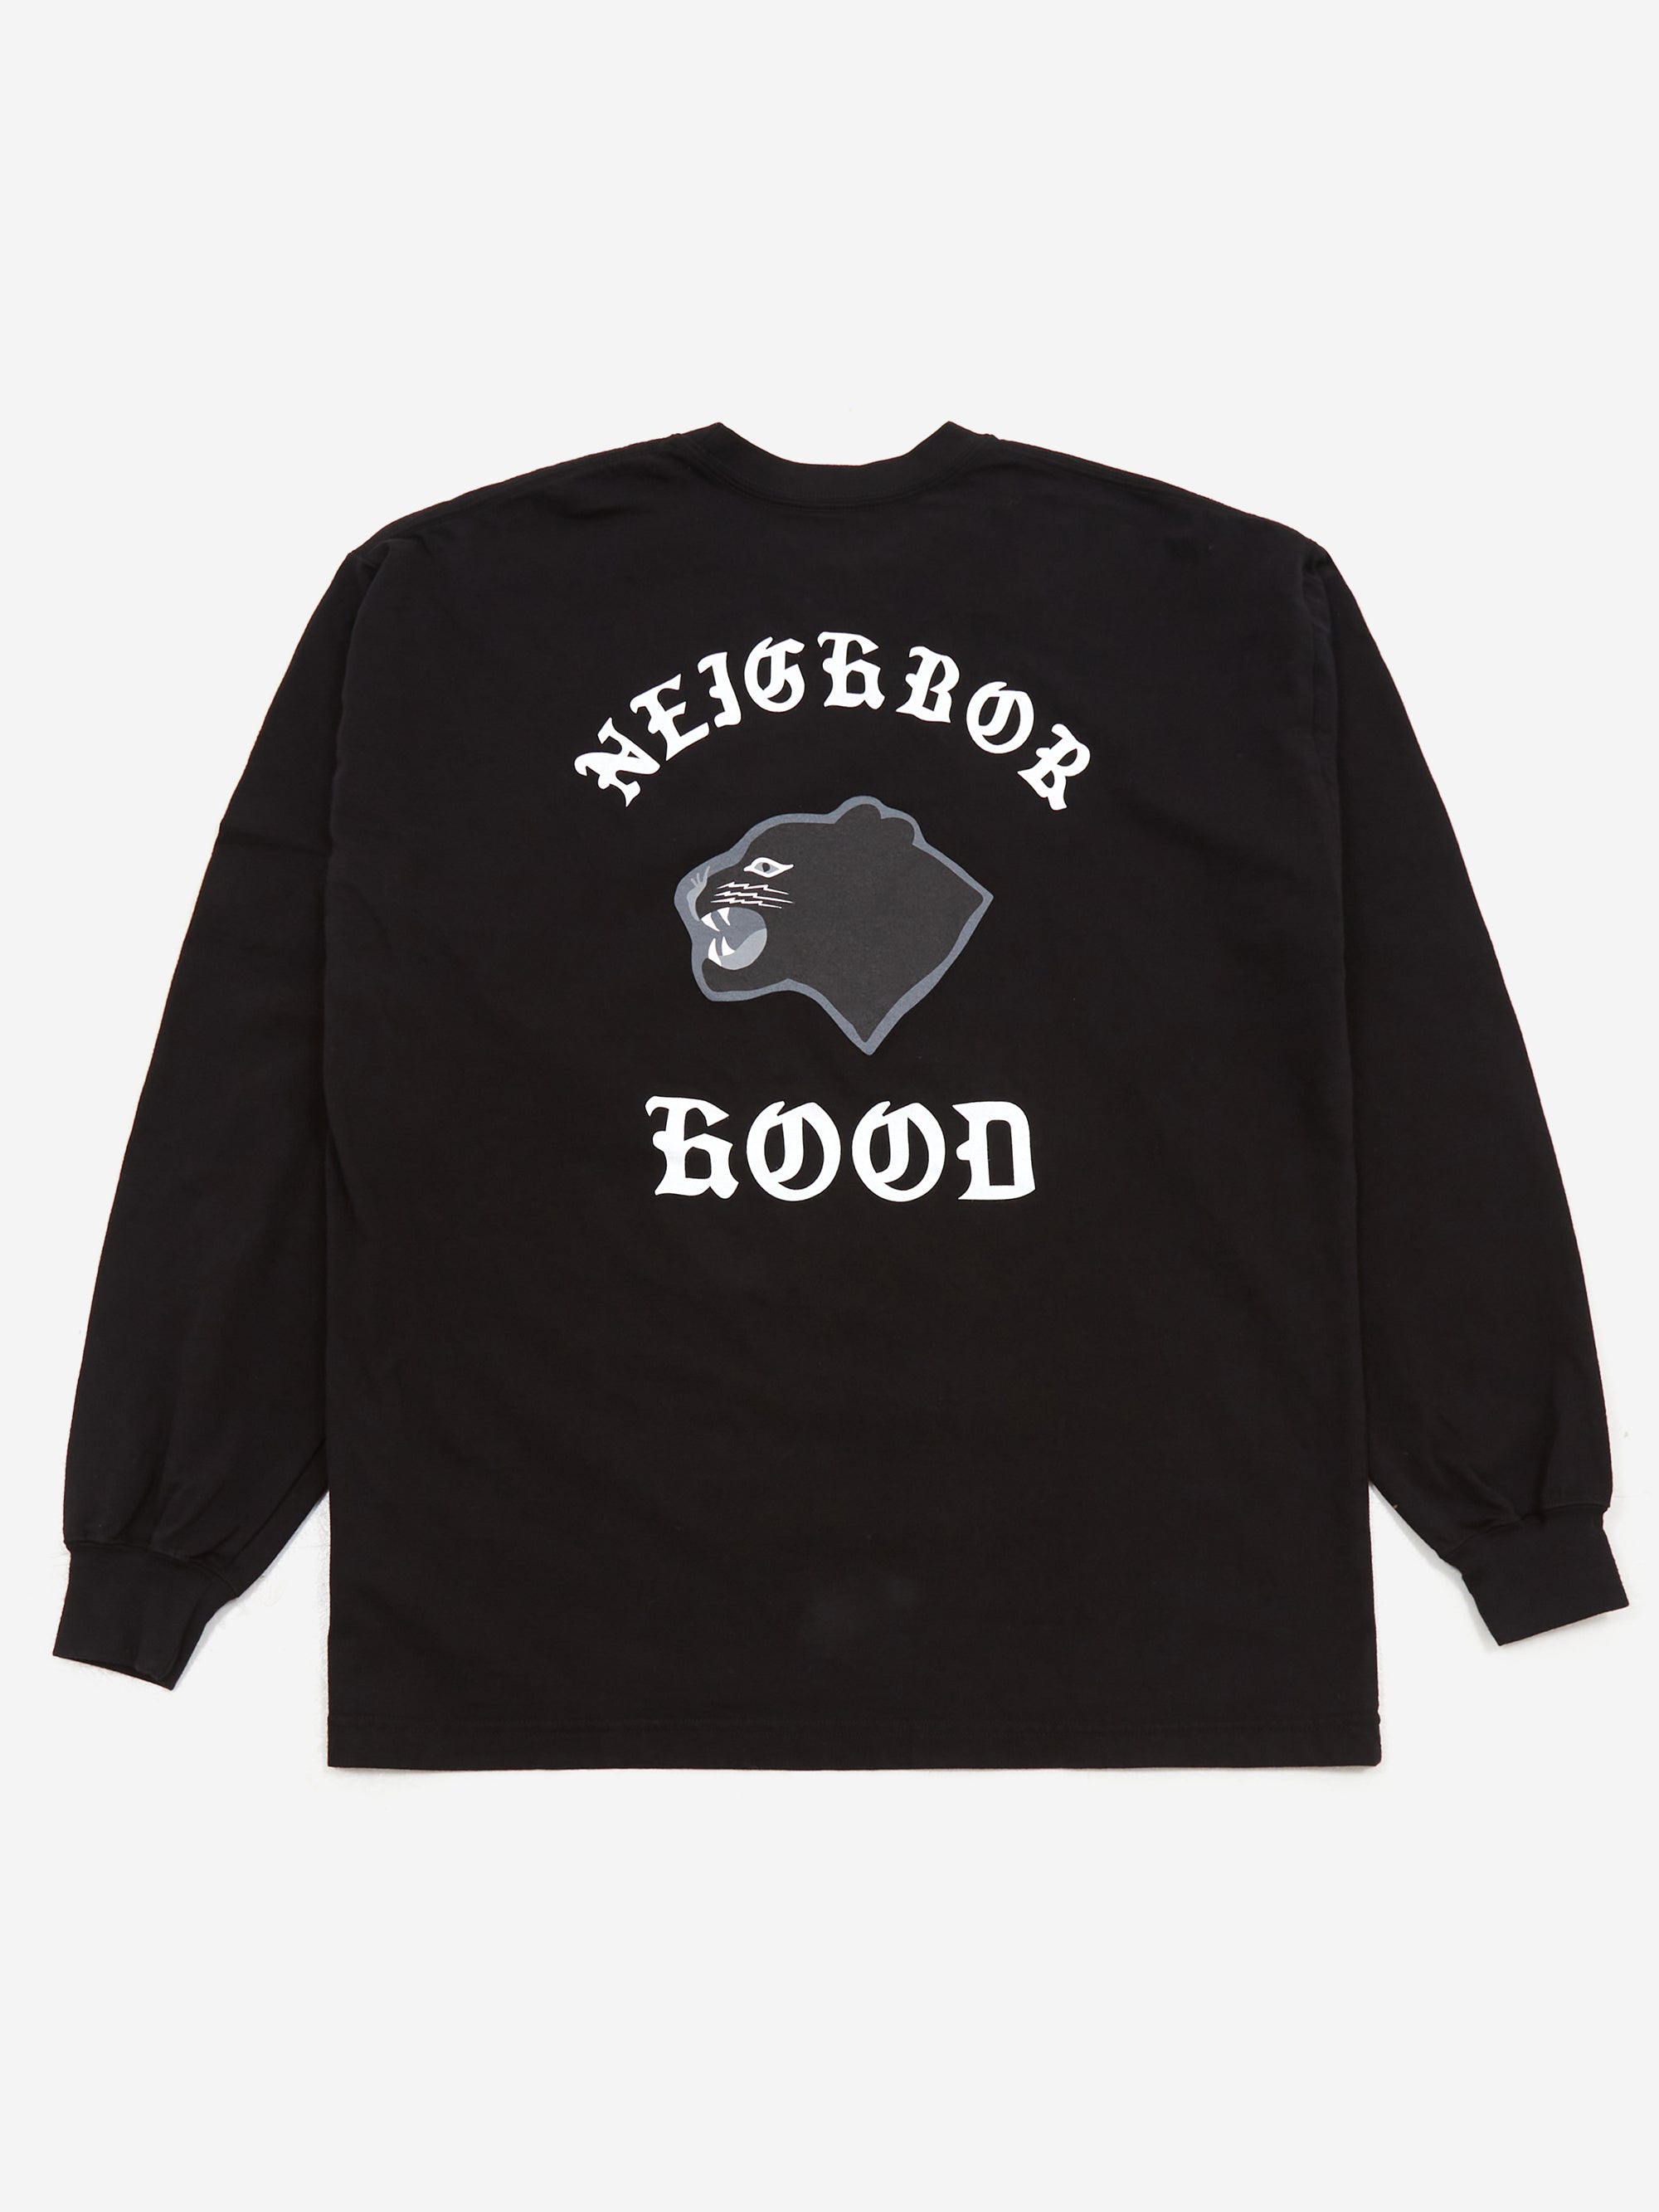 Neighborhood NH.10 Long Sleeve T-Shirt - Black – Goodhood